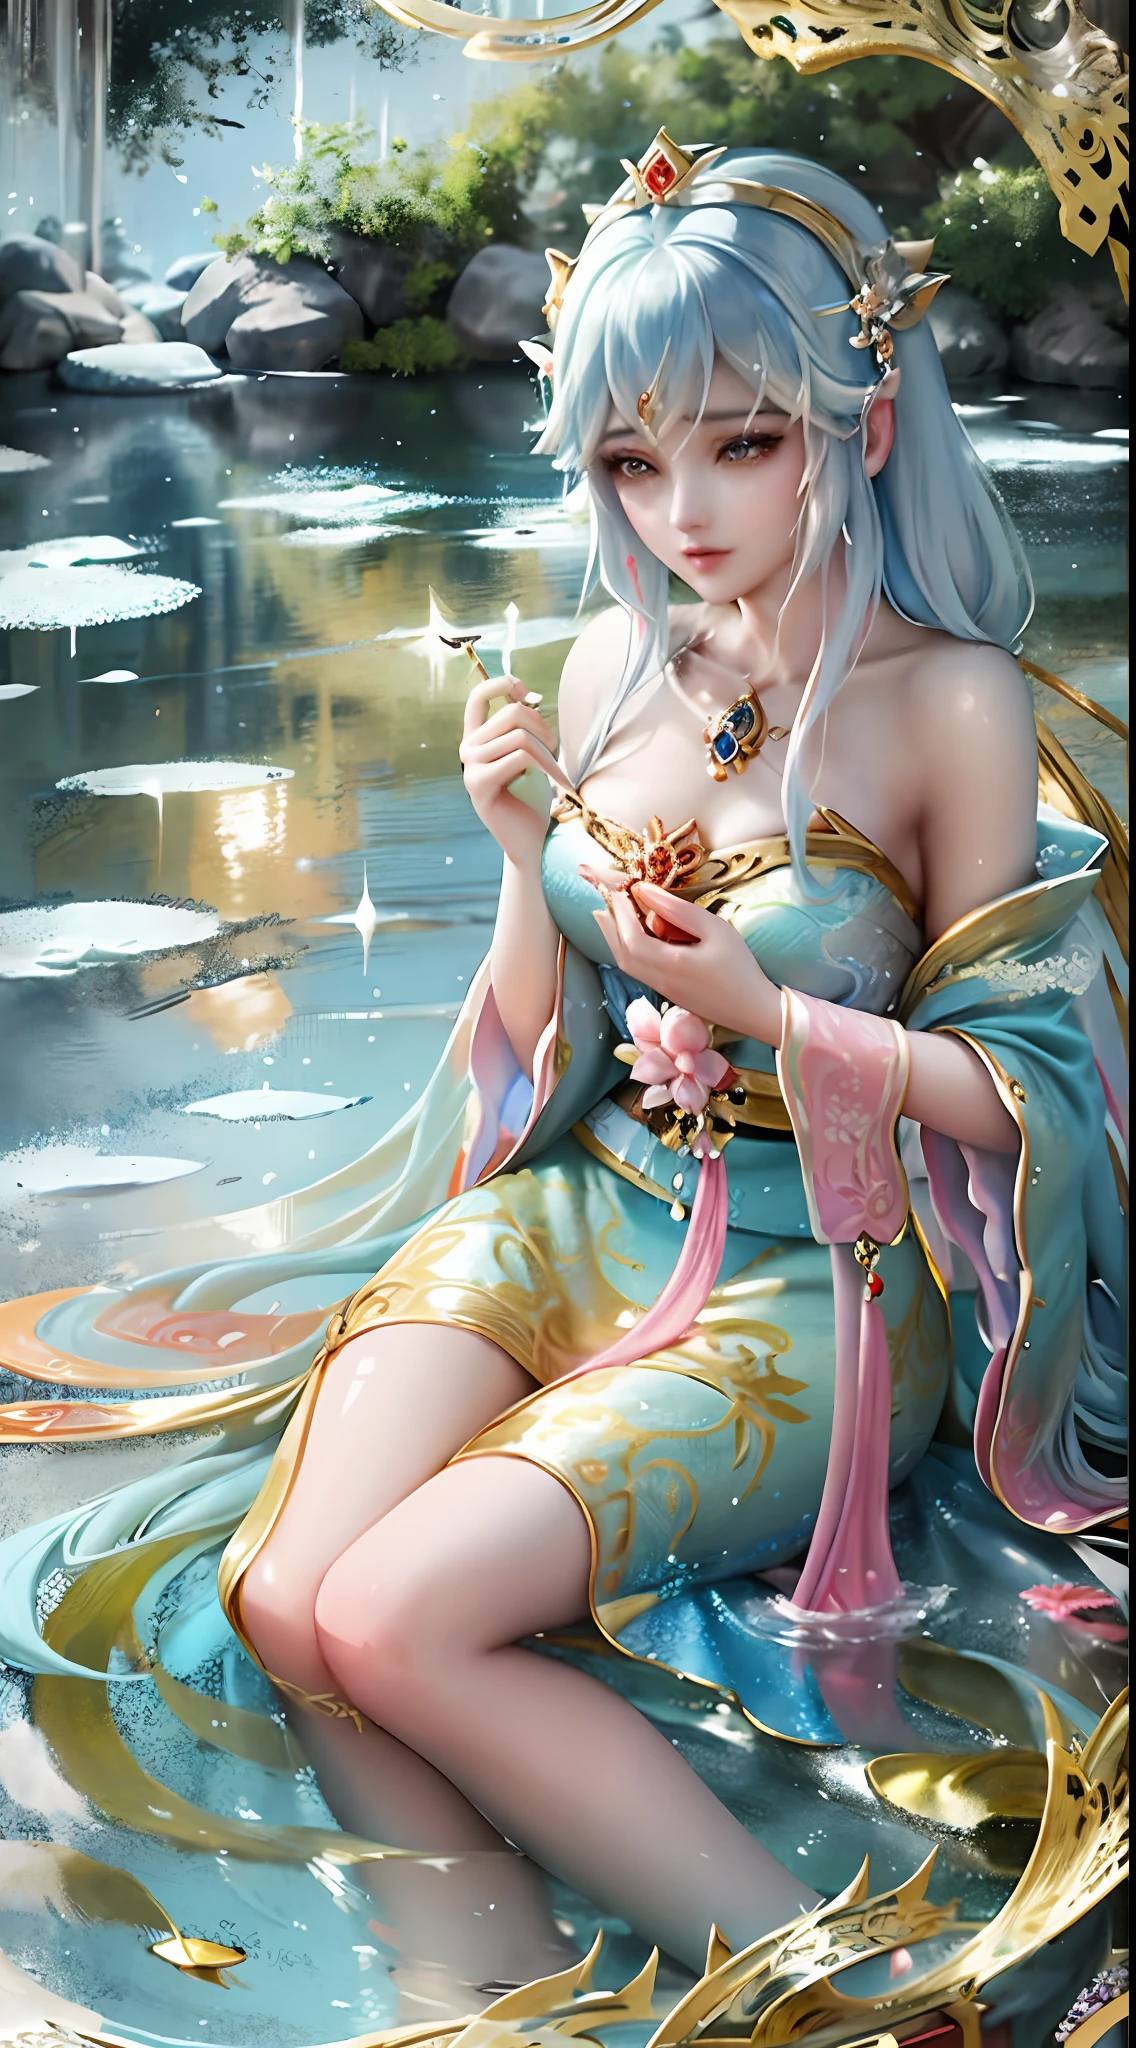 畫中一位穿著藍色裙子的女人在池塘裡的水, 美麗的人物畫, ((美麗的幻想皇后)), 博沃特的藝術風格, 特写幻想与水魔法, guweiz 風格的藝術品, 靈感來自陳逸飛, 空灵之美, 美麗的幻想皇后, 靈感來自張岩, 宮 ， 一個穿著漢服的女孩